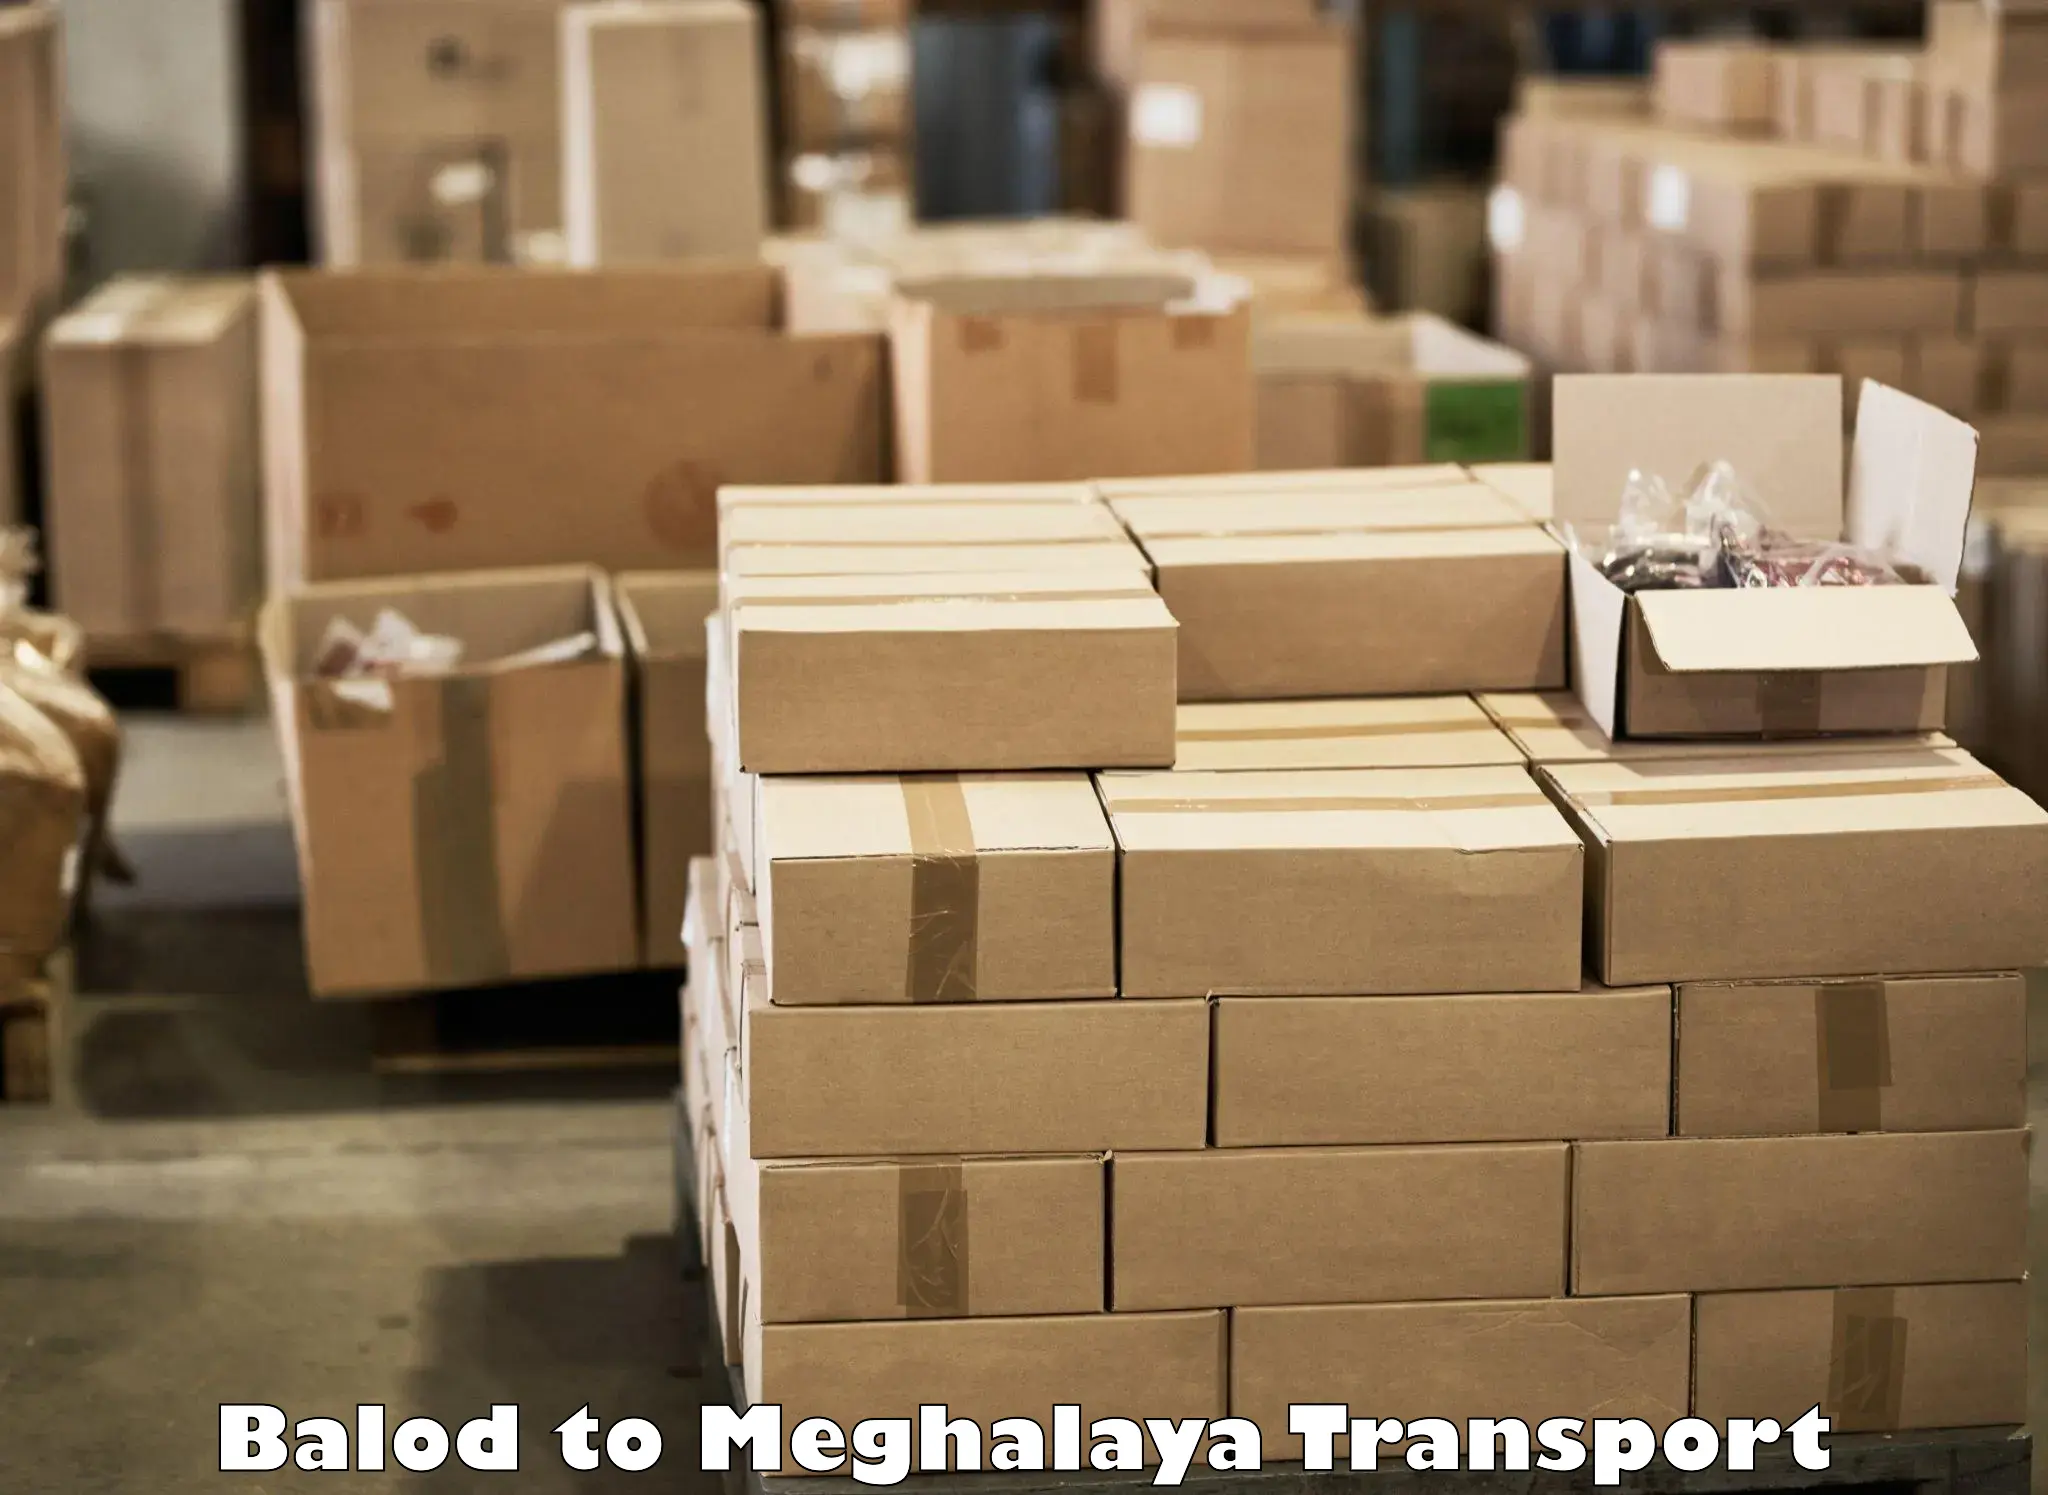 Delivery service Balod to Meghalaya